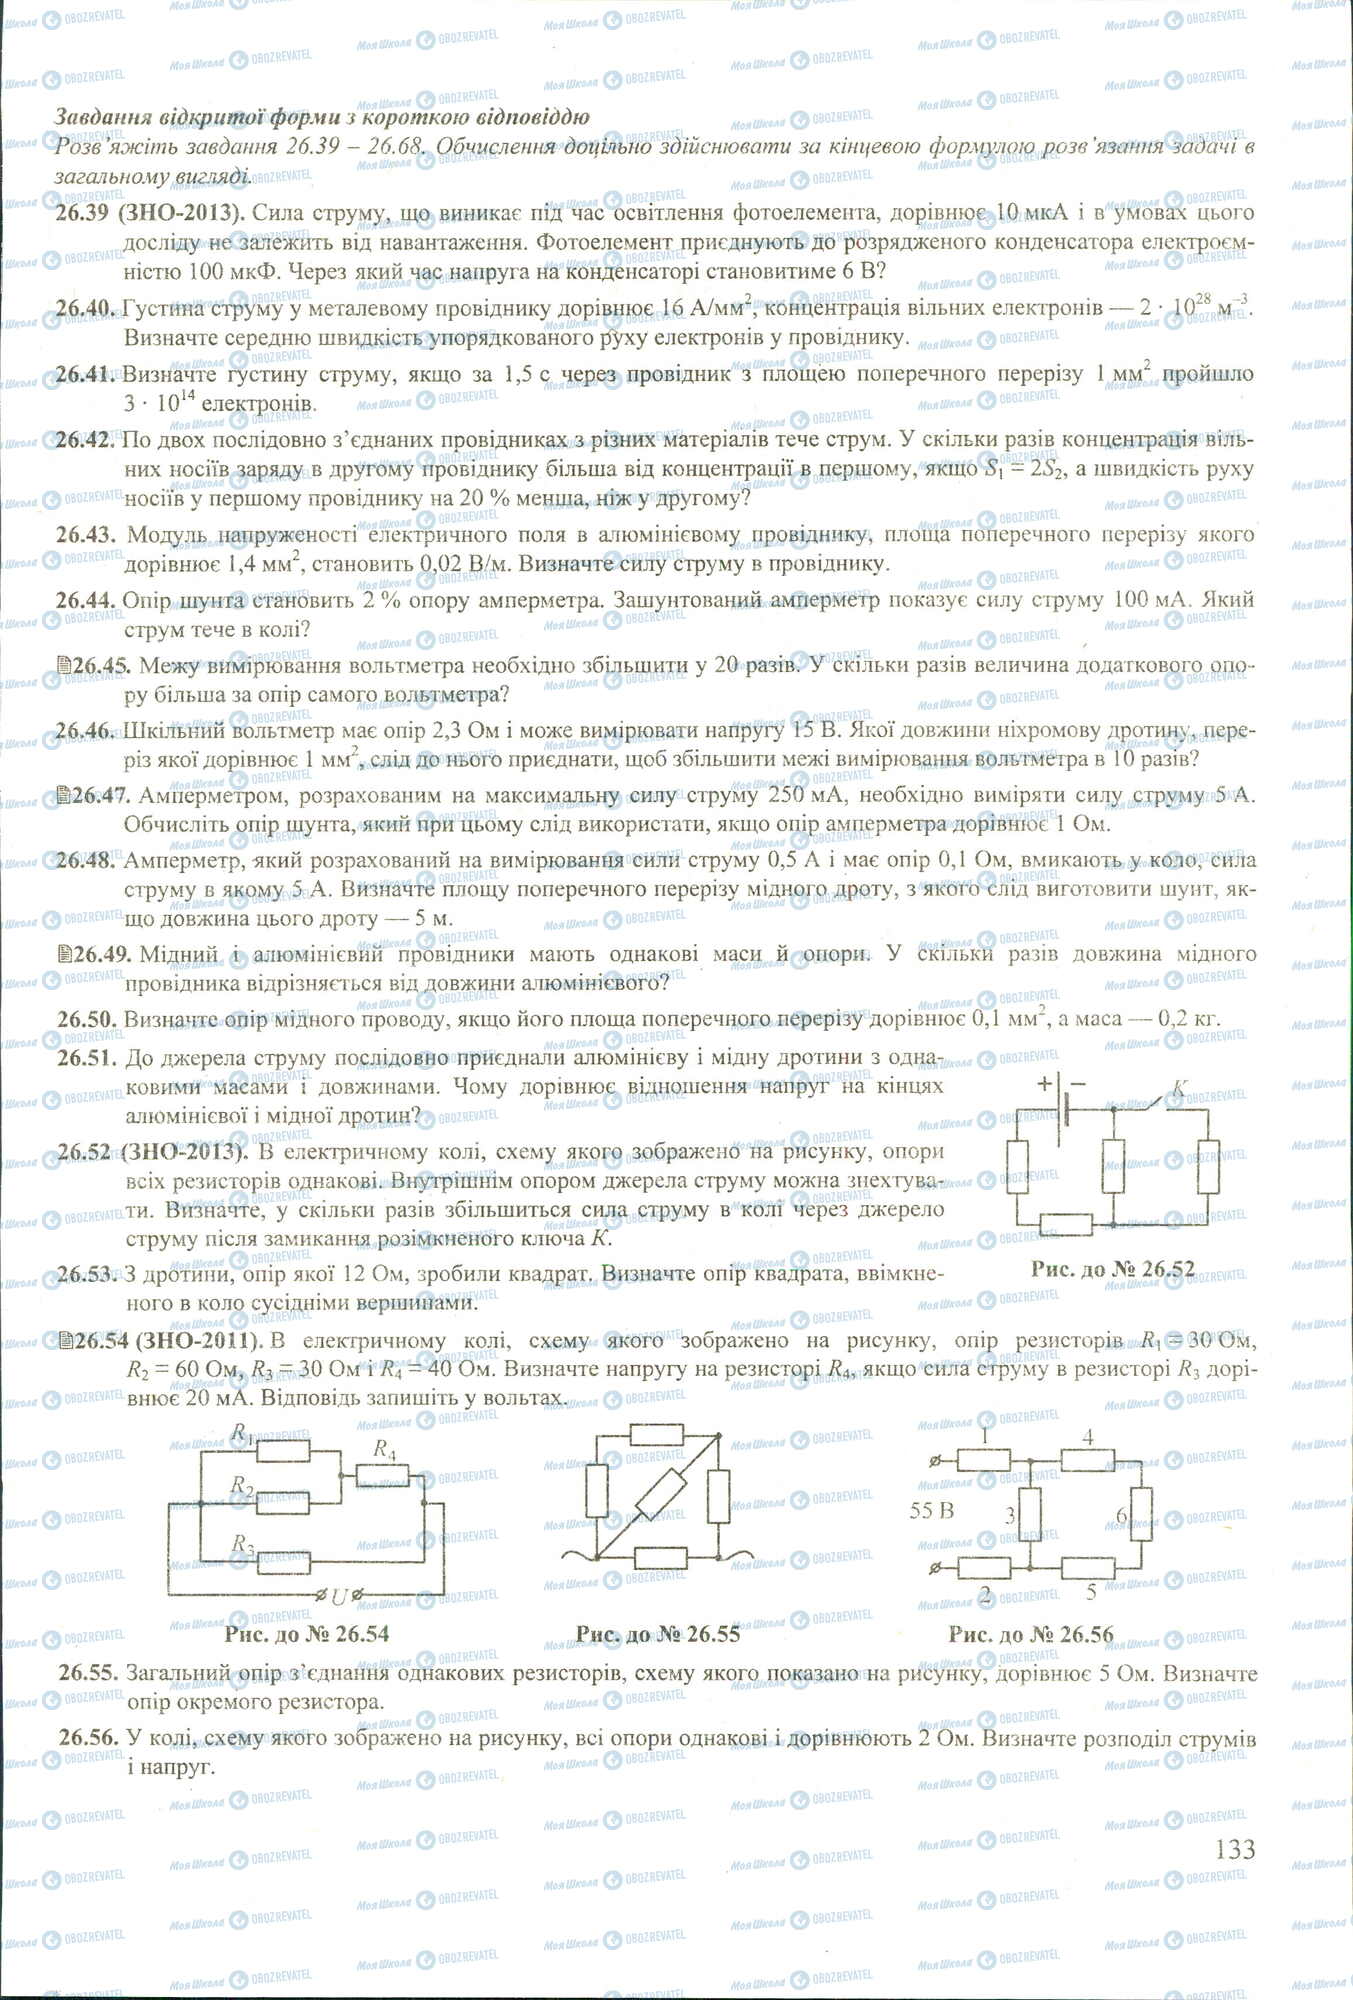 ЗНО Физика 11 класс страница 29-56